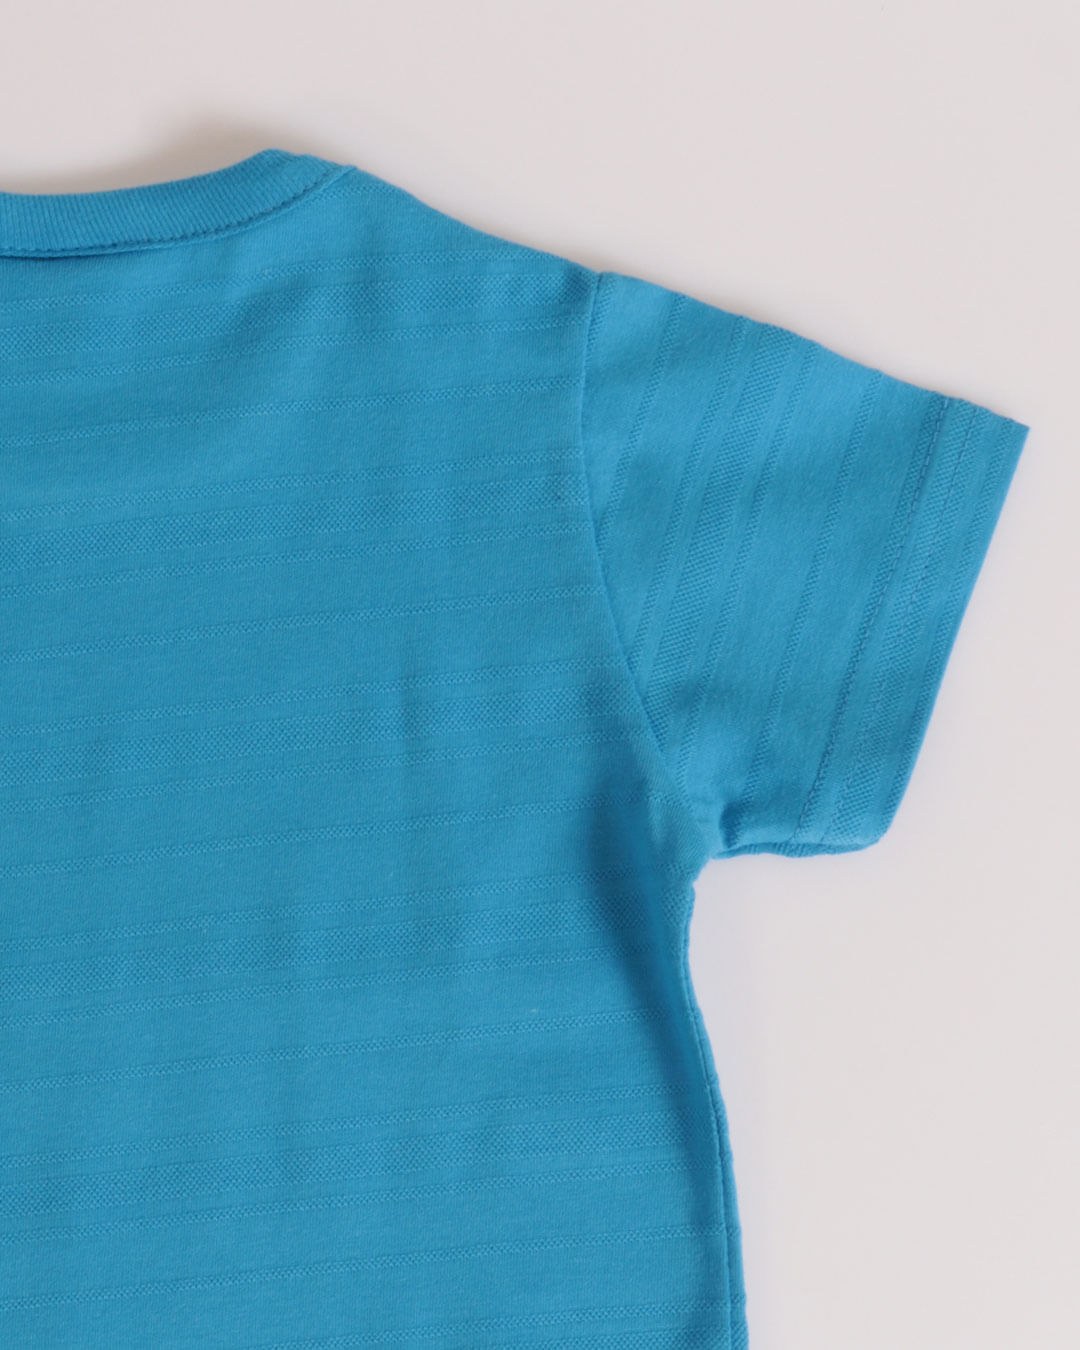 Camiseta-Mc-51271-Surf-M13---Azul-Medio